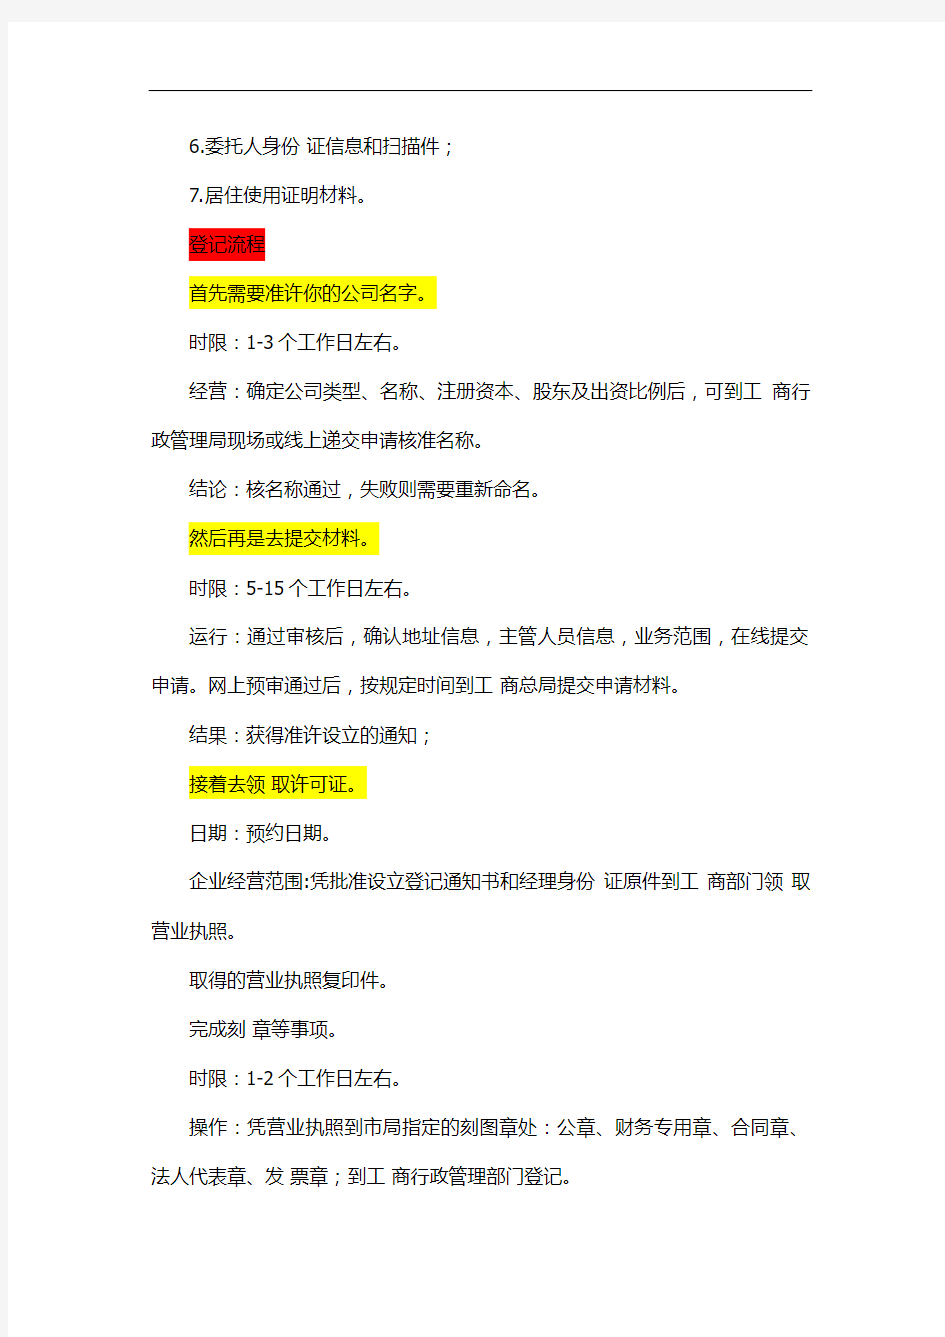 上海注册公司详细流程